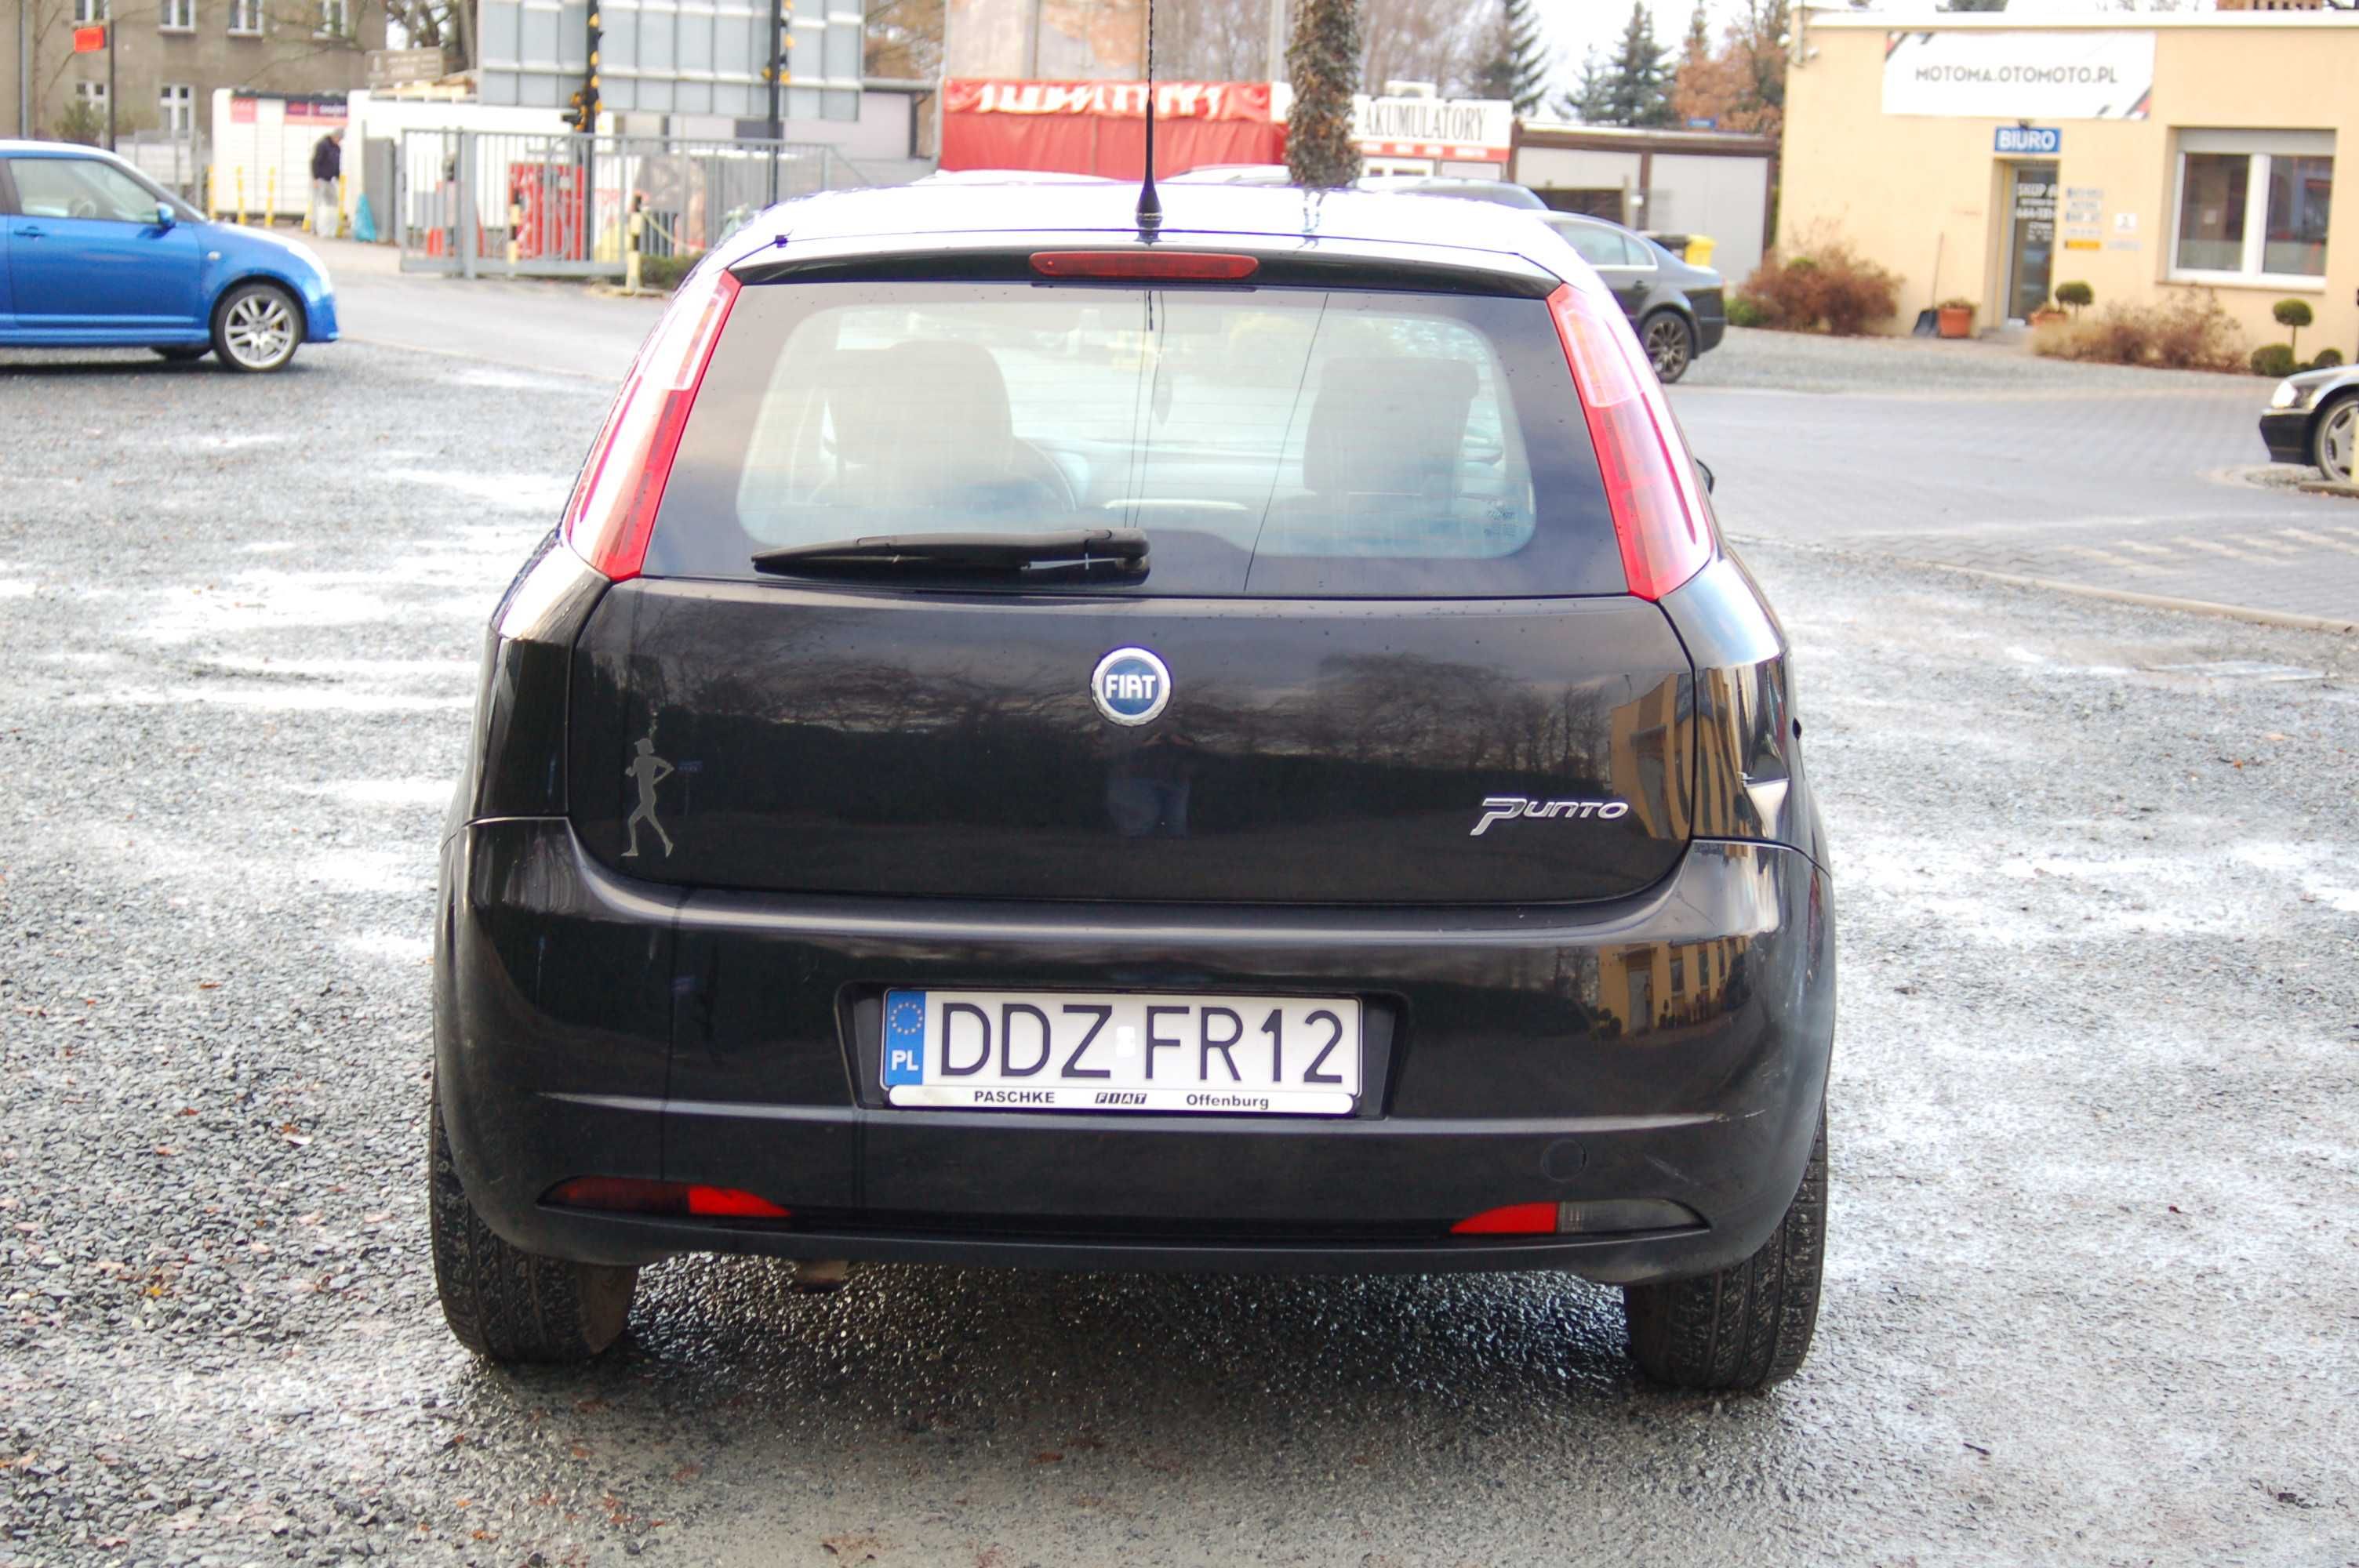 Fiat Grande Punto 2005 1.2 Ben. Klima, Wspomaganie, 5-drzwiowy